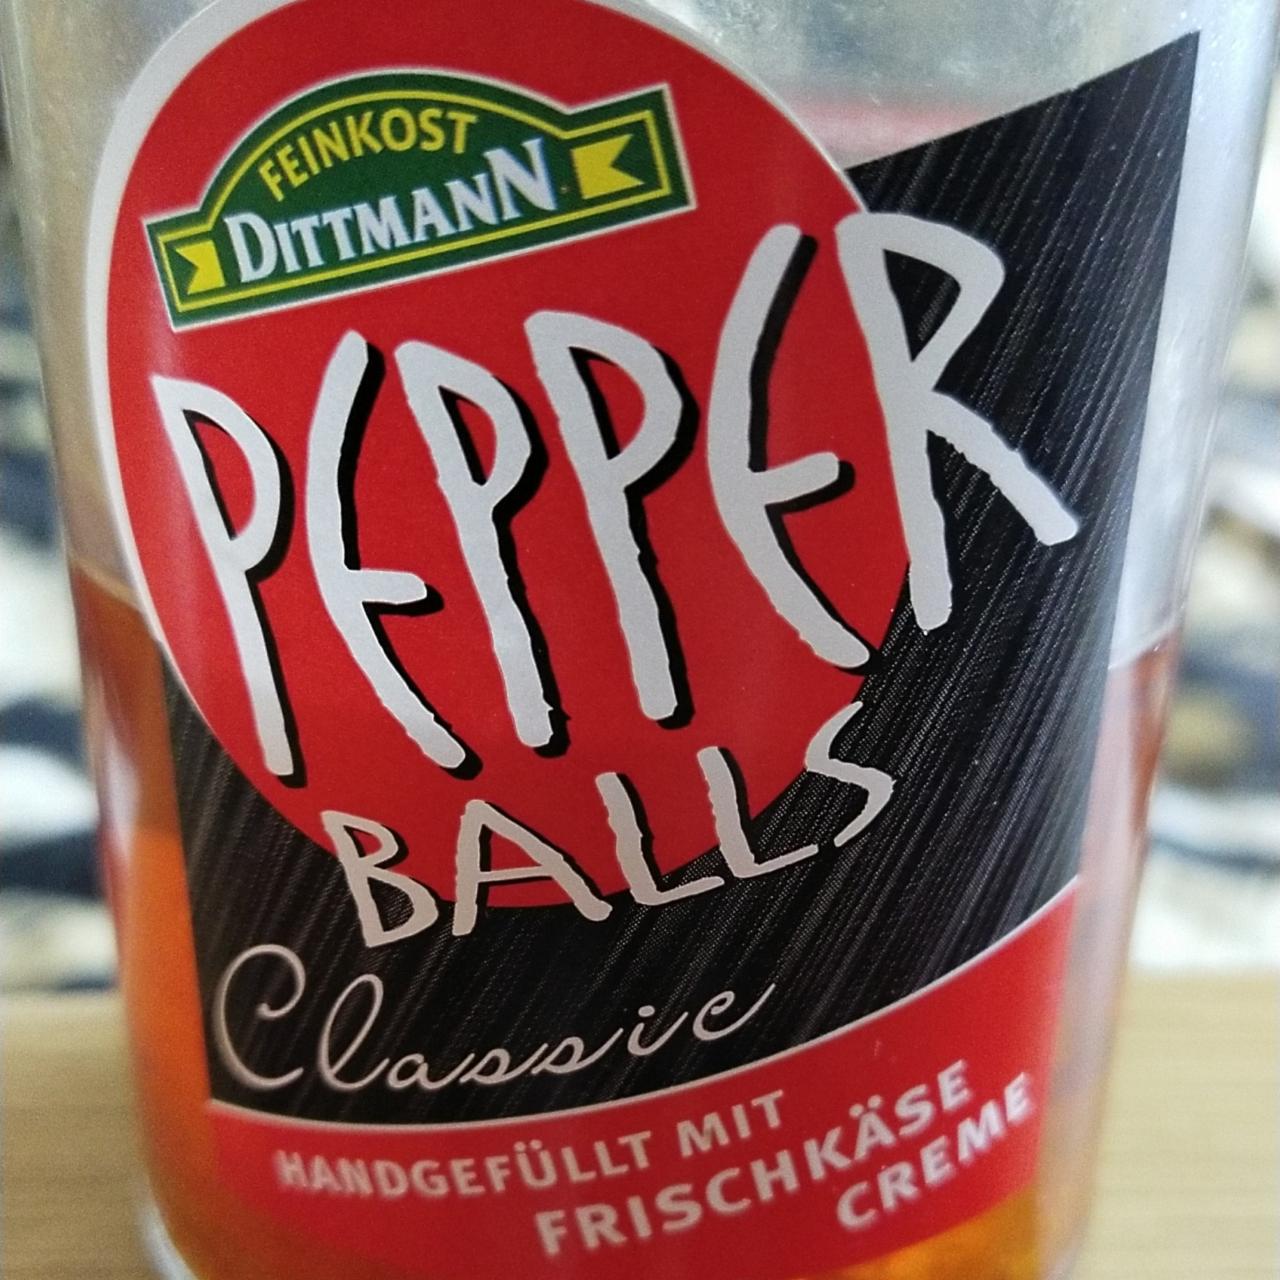 Фото - мини сладкие перцы с творожным сыром в масле Peper balls Feinkost Dittmann